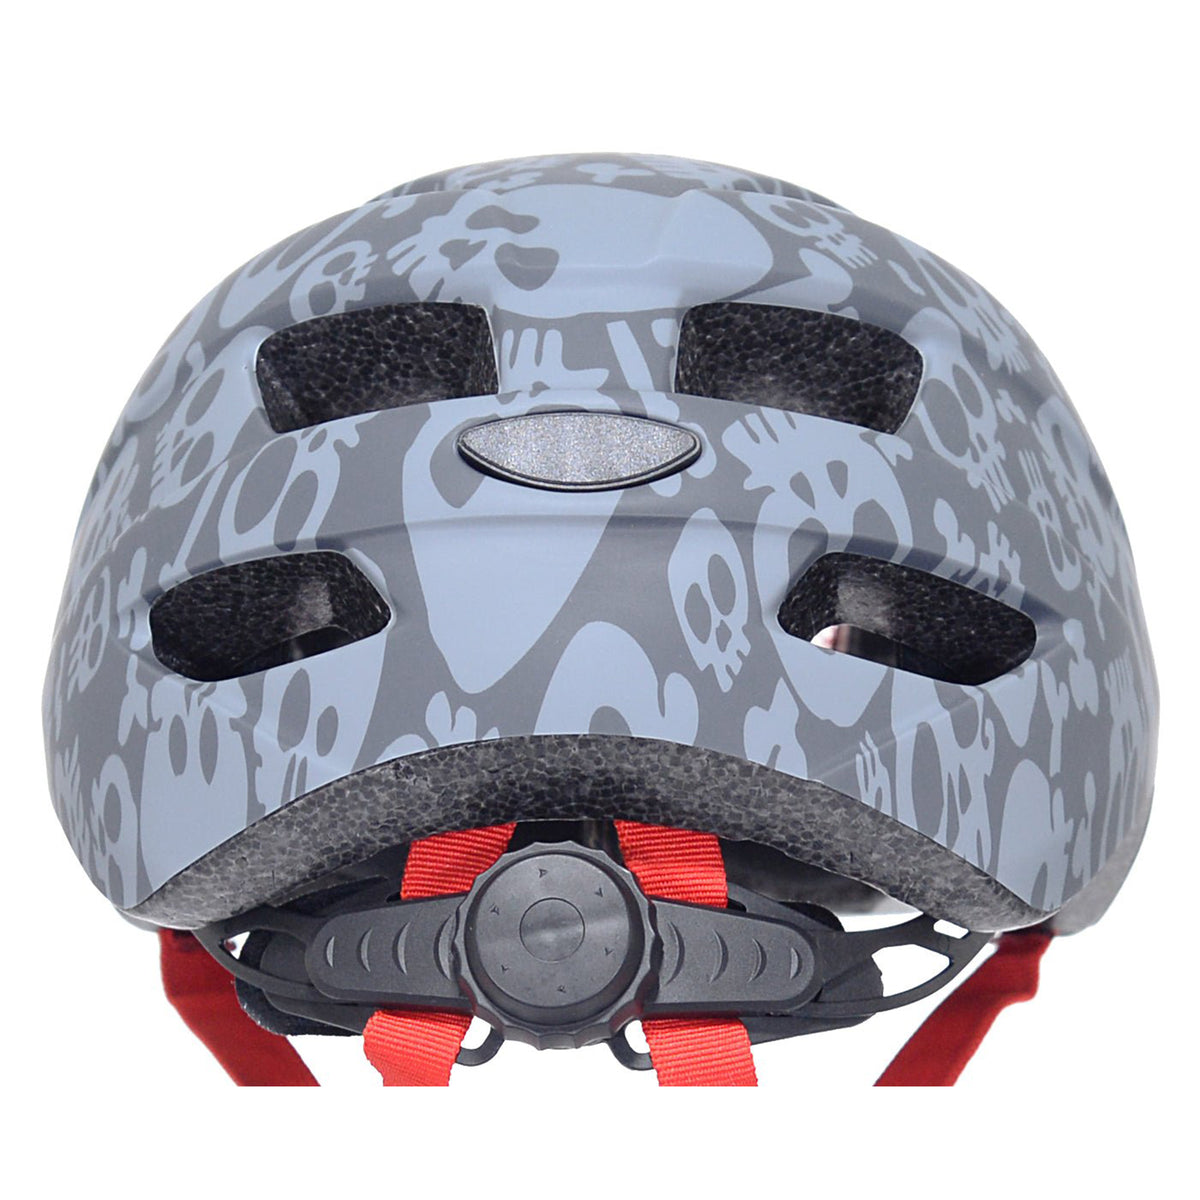 Kent Skull Toddler Multi-Sport Helmet | Helmet for Kids Ages 1-3